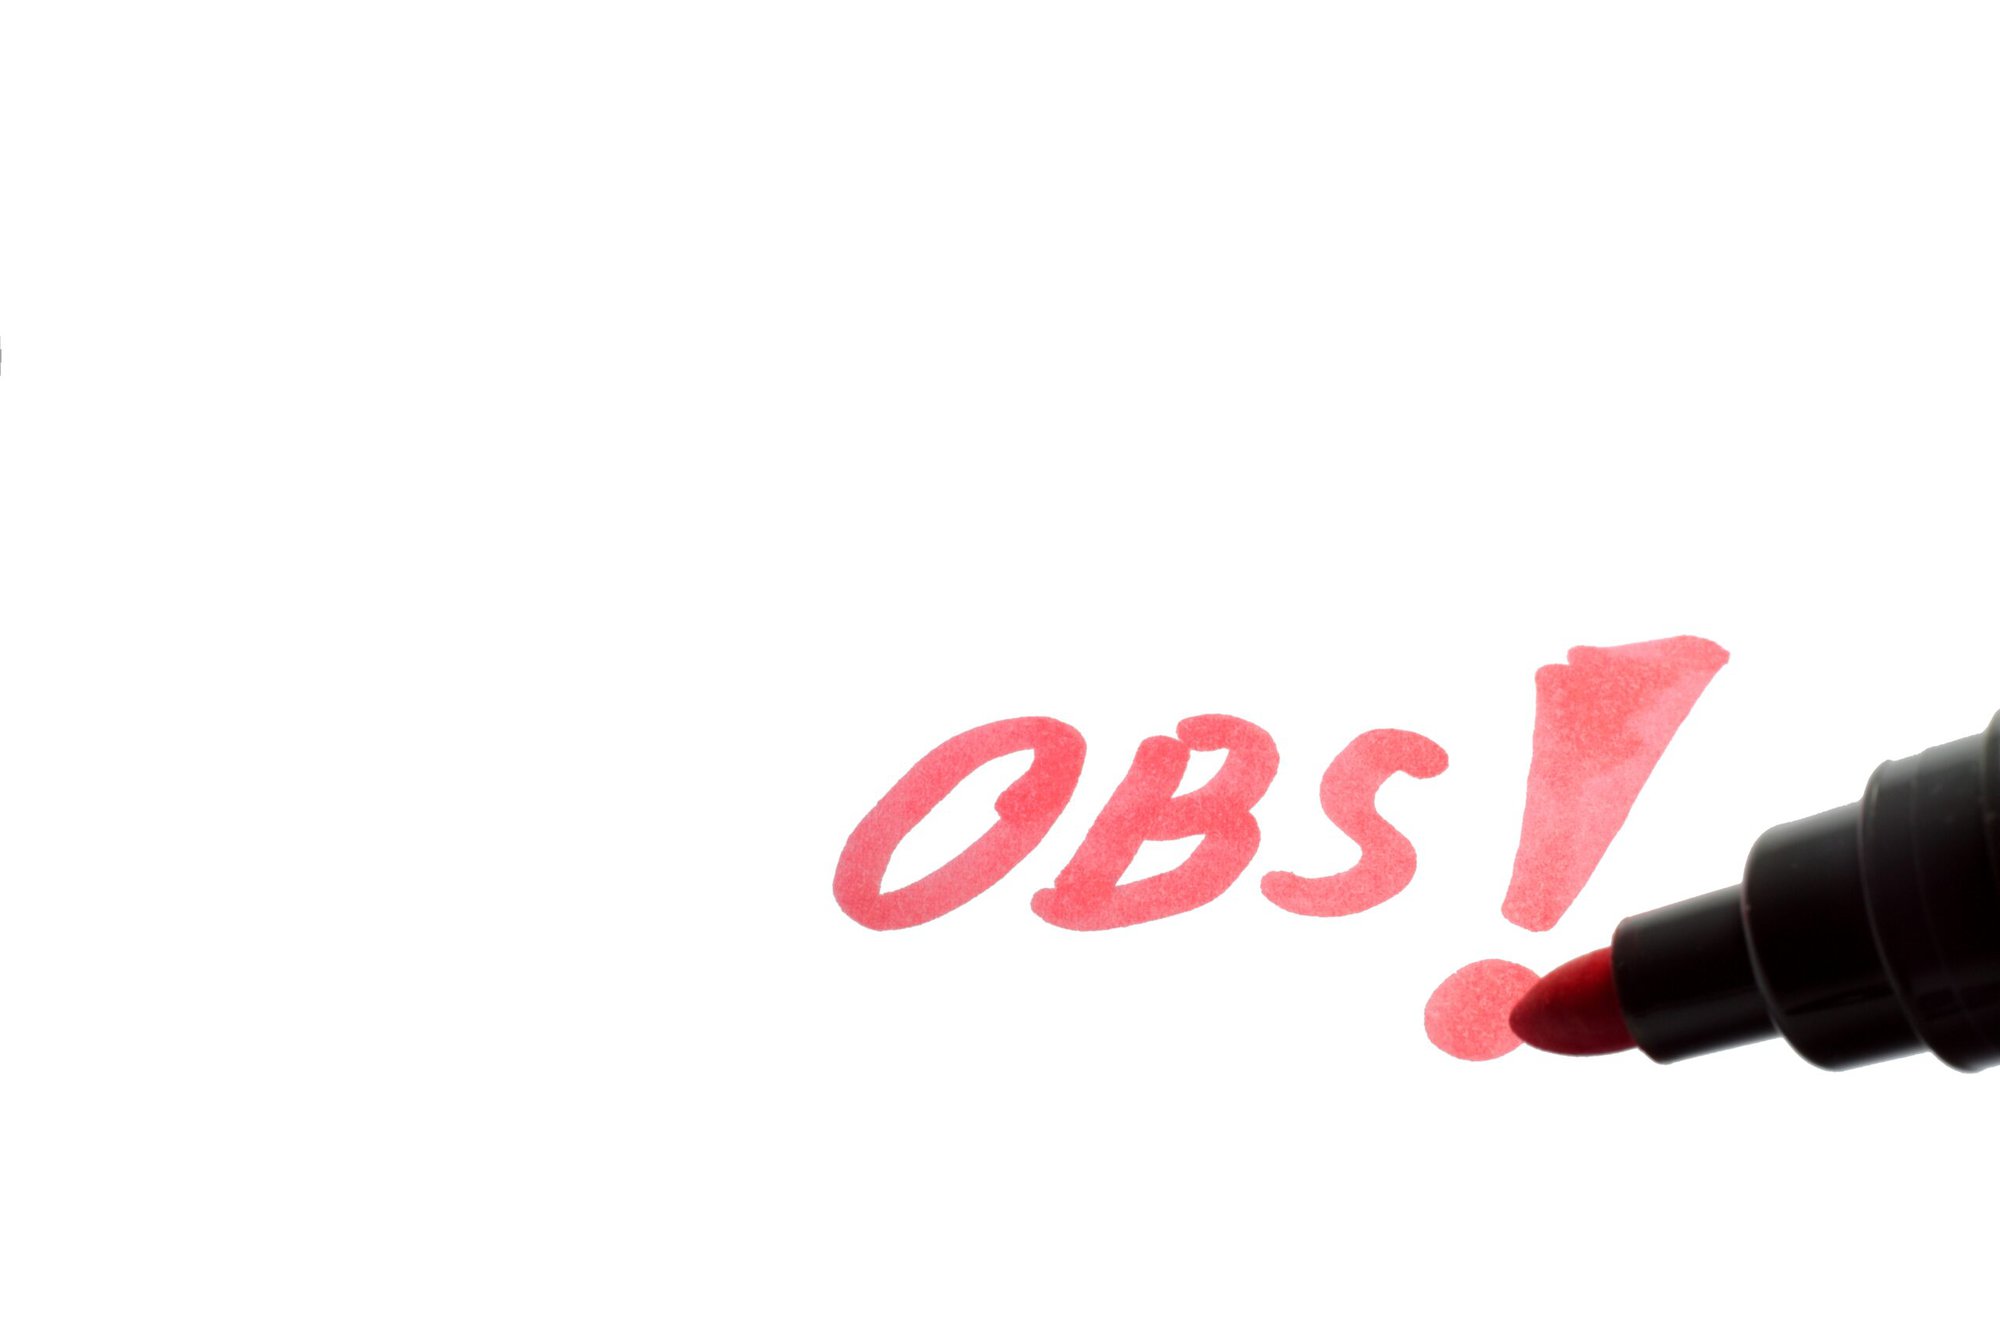 Rød tusch skriver "OBS!"